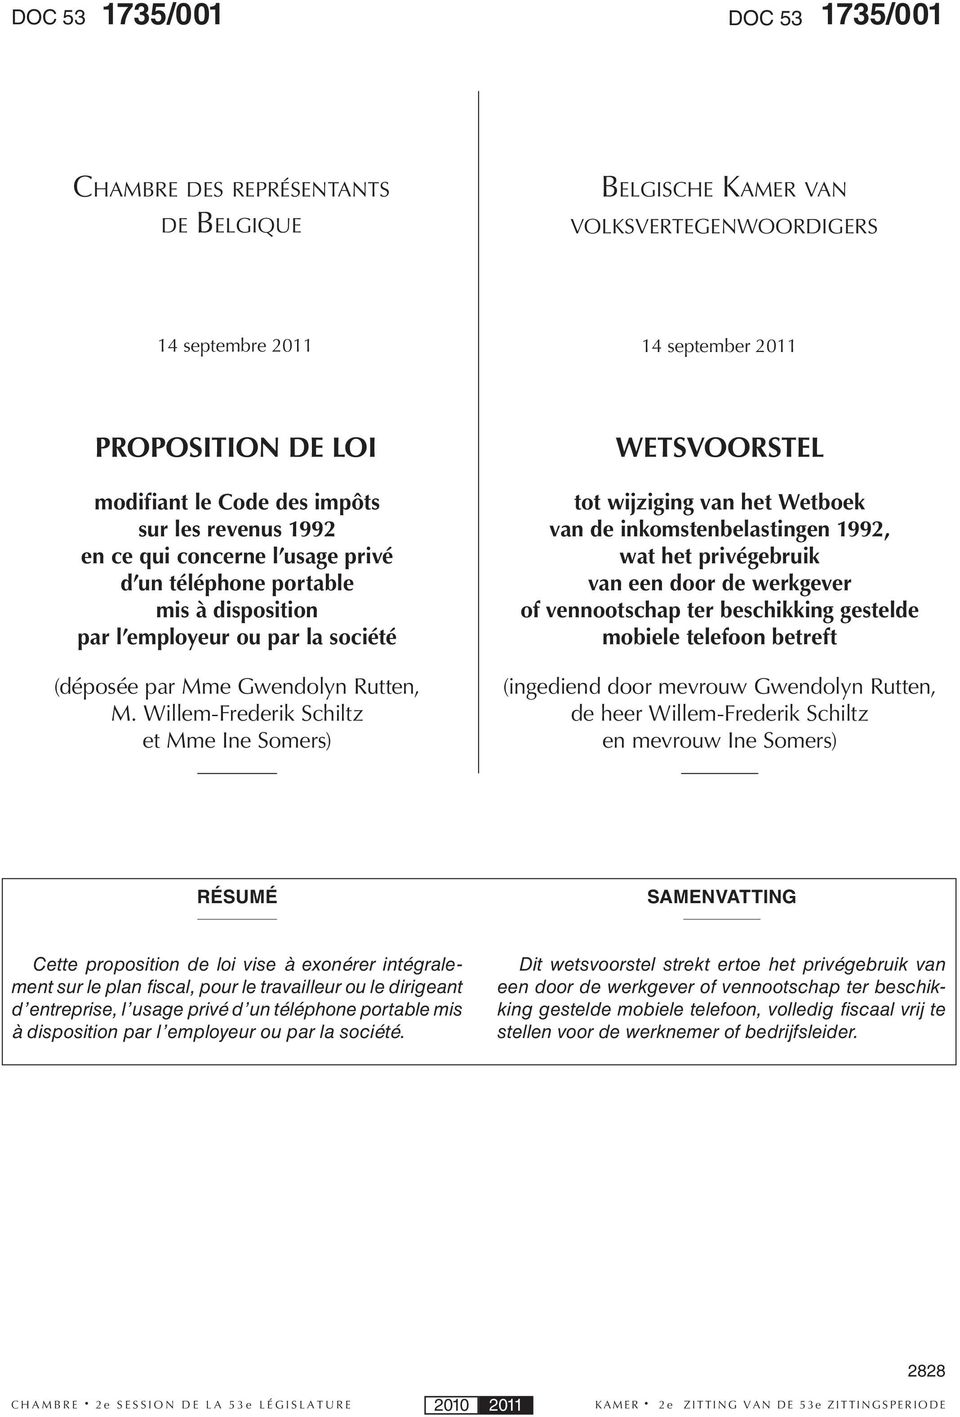 Willem-Frederik Schiltz et Mme Ine Somers) WETSVOORSTEL tot wijziging van het Wetboek van de inkomstenbelastingen 1992, wat het privégebruik van een door de werkgever of vennootschap ter beschikking